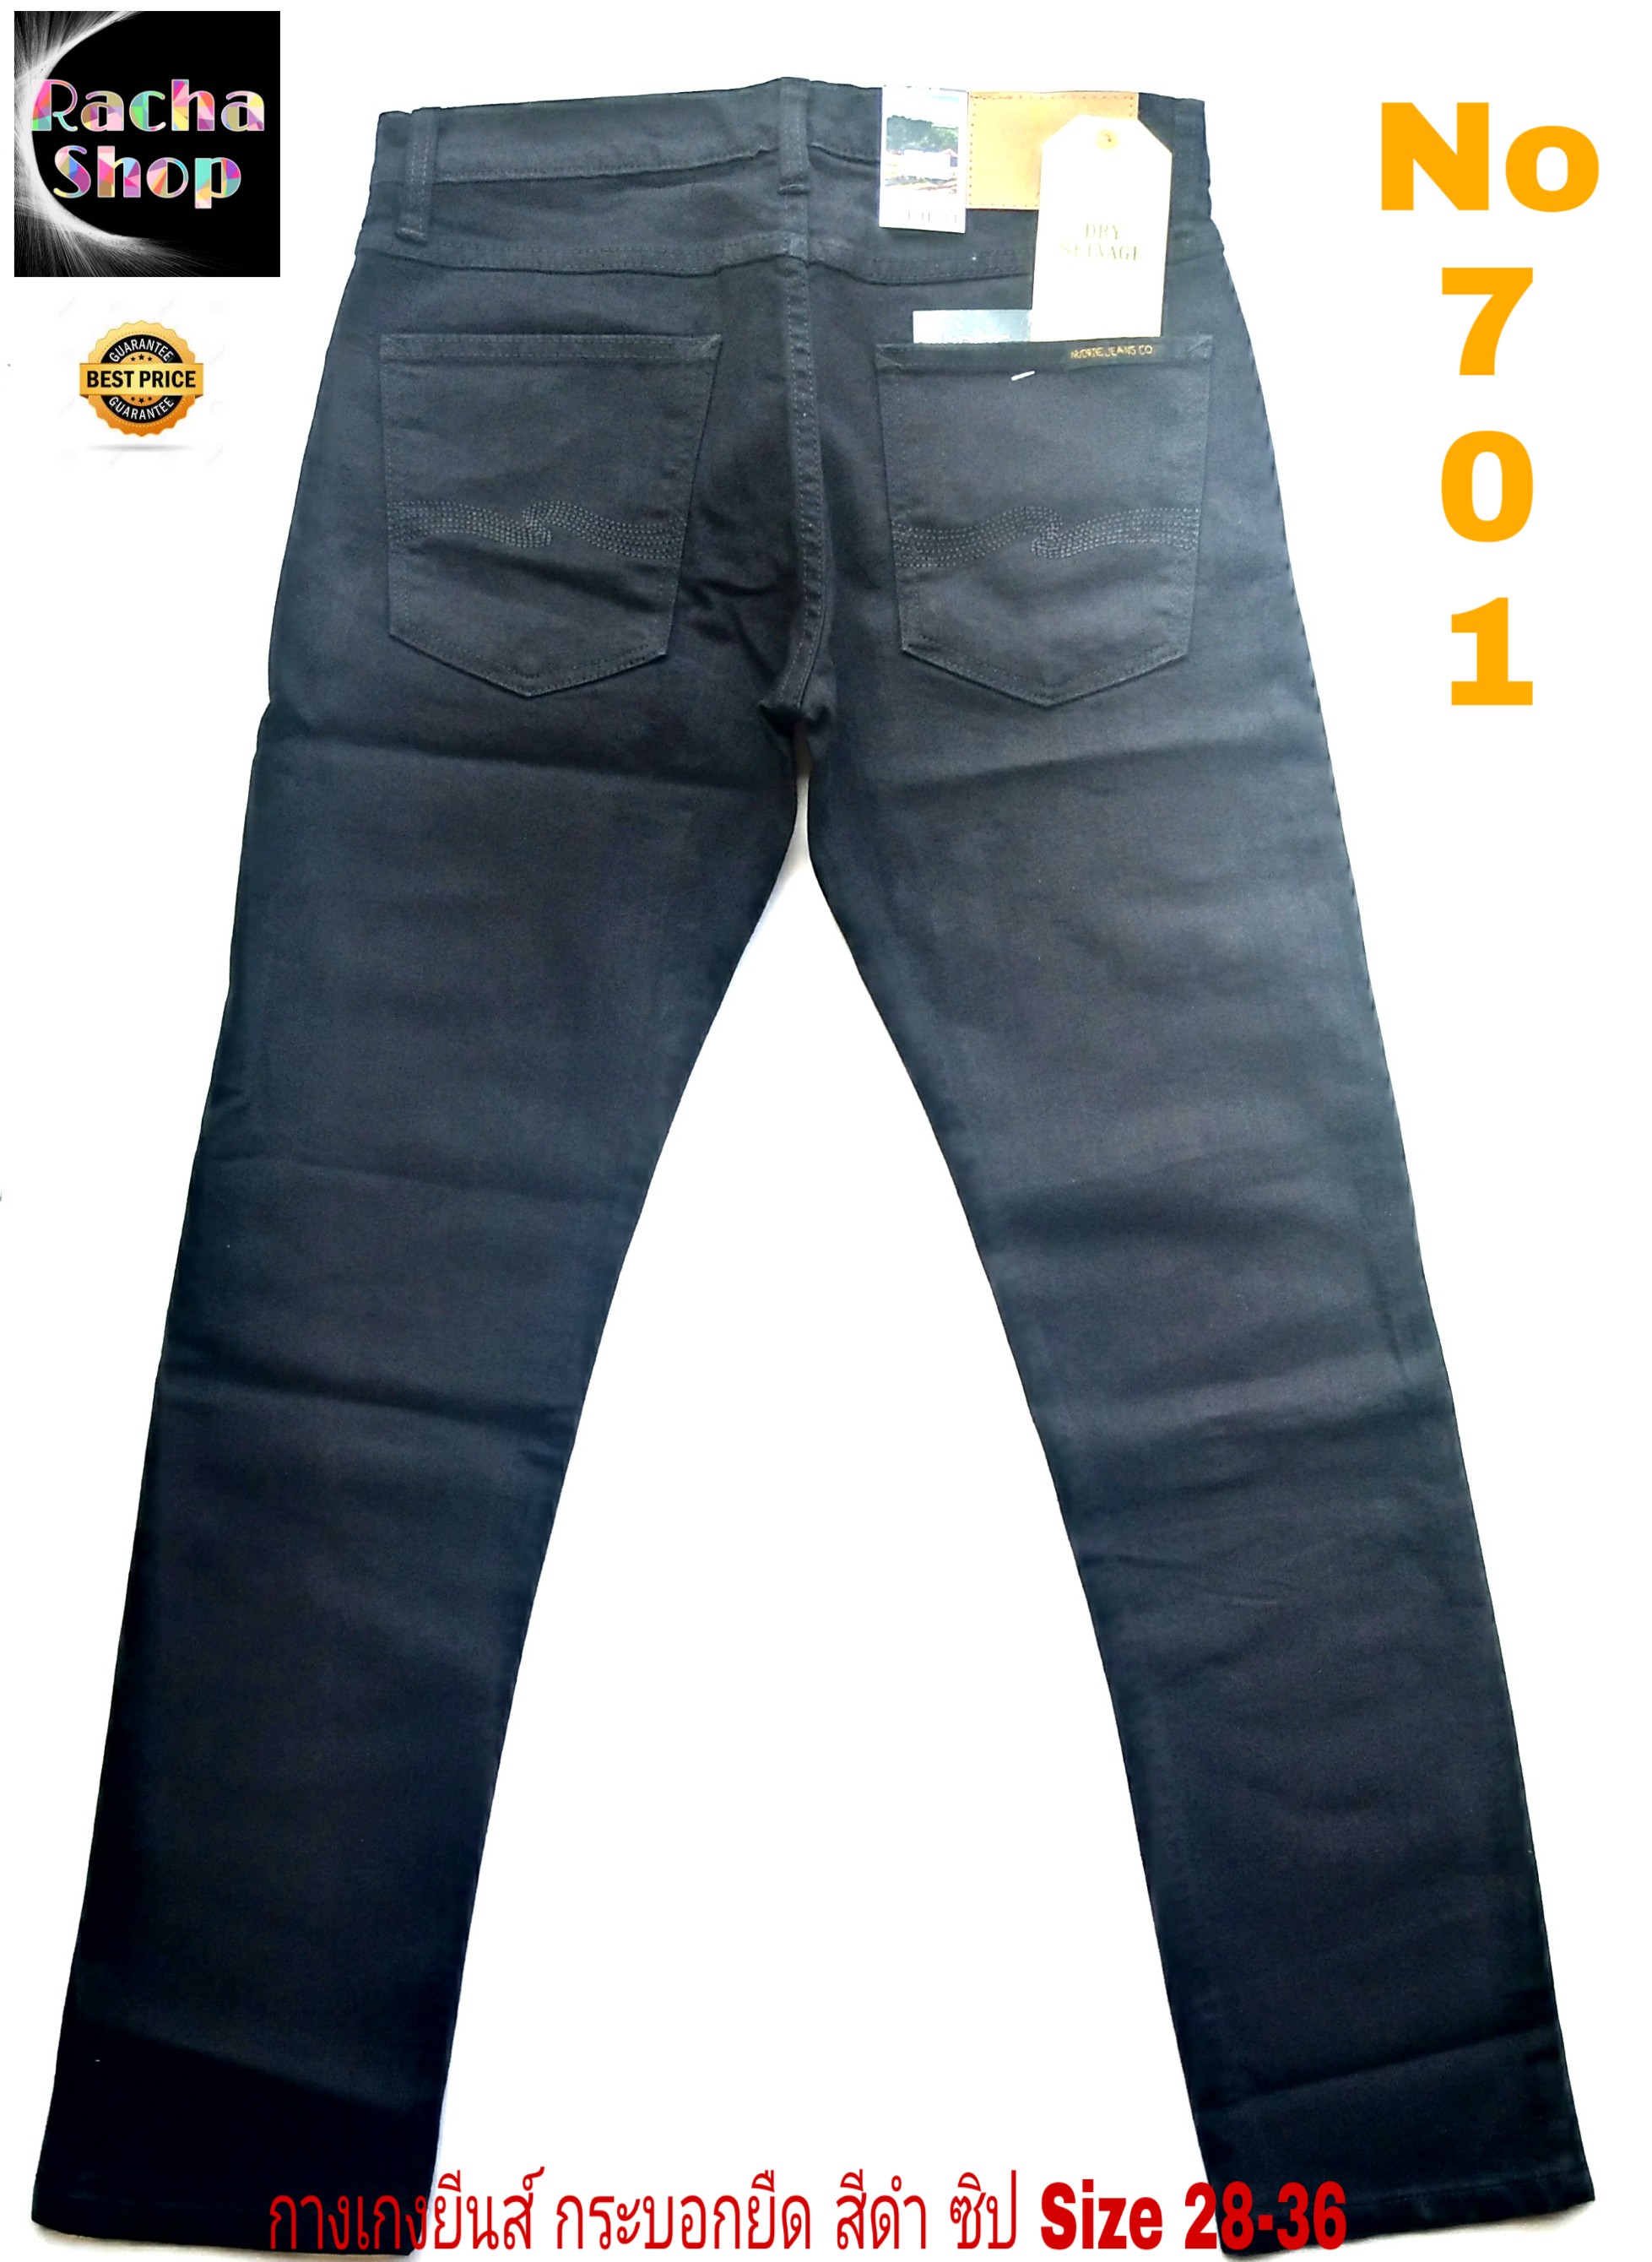 กางเกงขายาว กางเกงยีนส์ขายาวชาย กระบอกเล็ก ผ้ายืด กระเป๋าหลังลาย NUDDIE ซิป สีน้ำเงินเข้ม Size 28-36